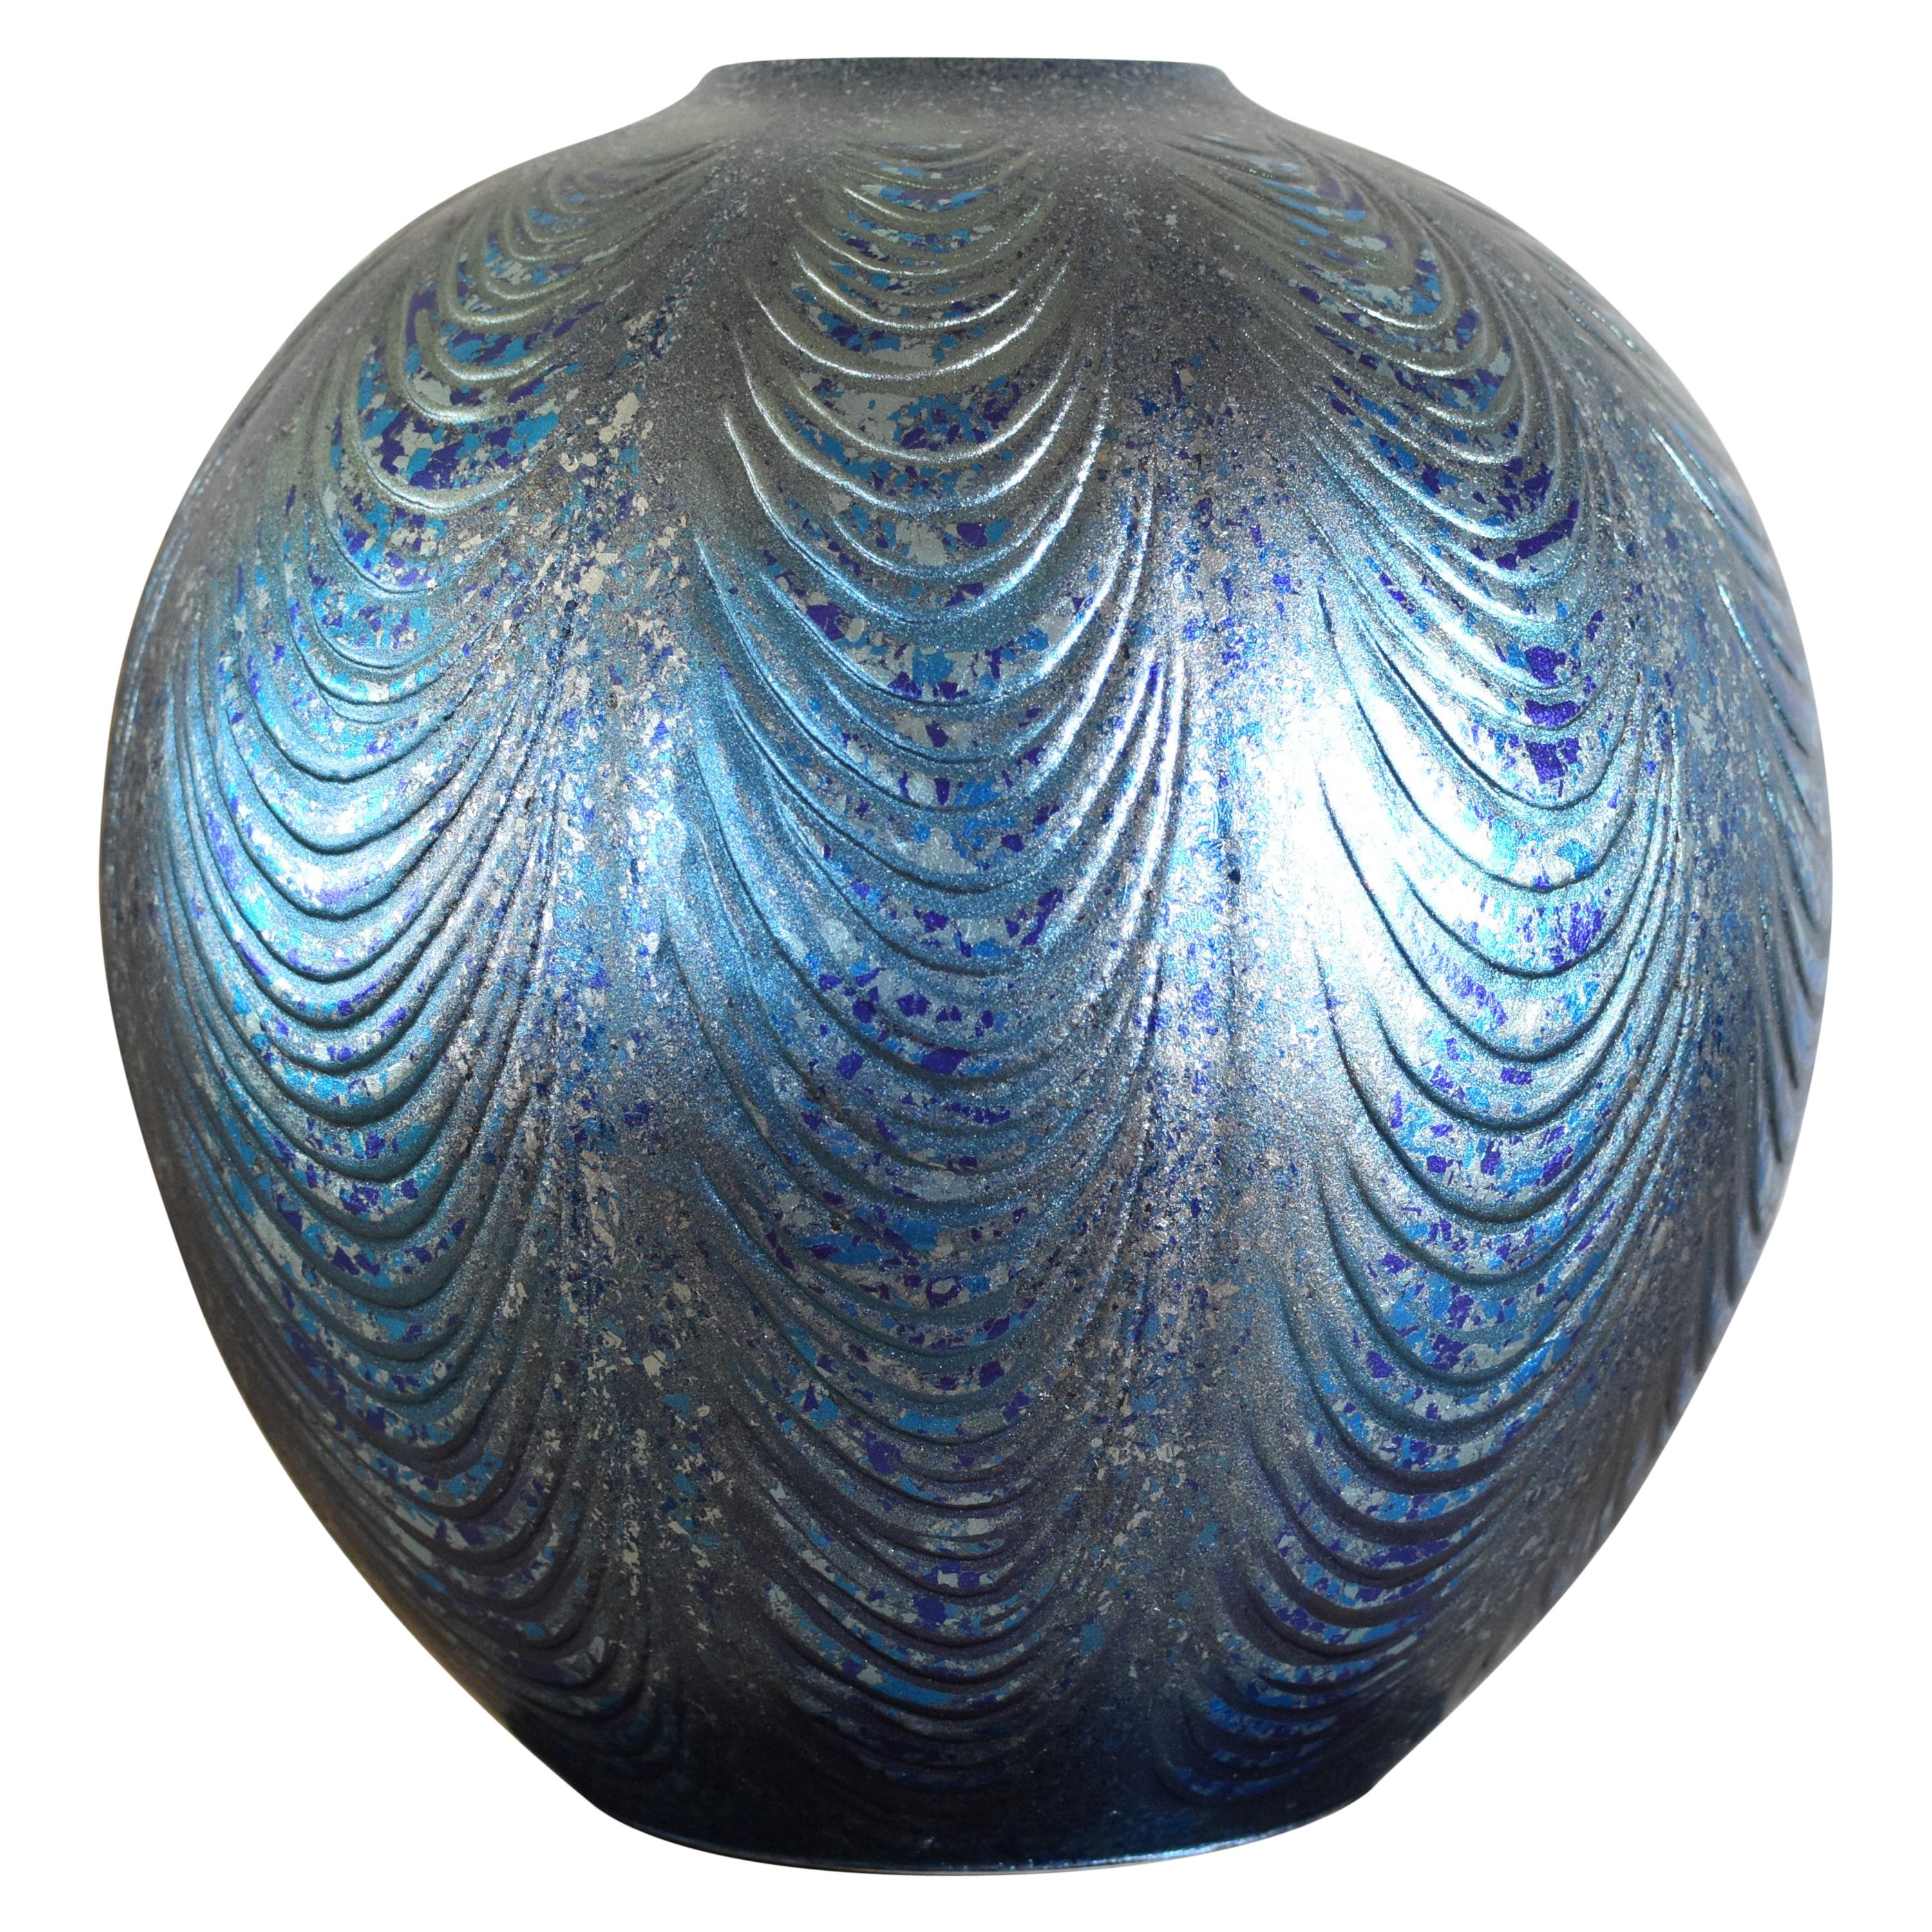 Grand vase en porcelaine bleu argenté par un maître artiste japonais contemporain